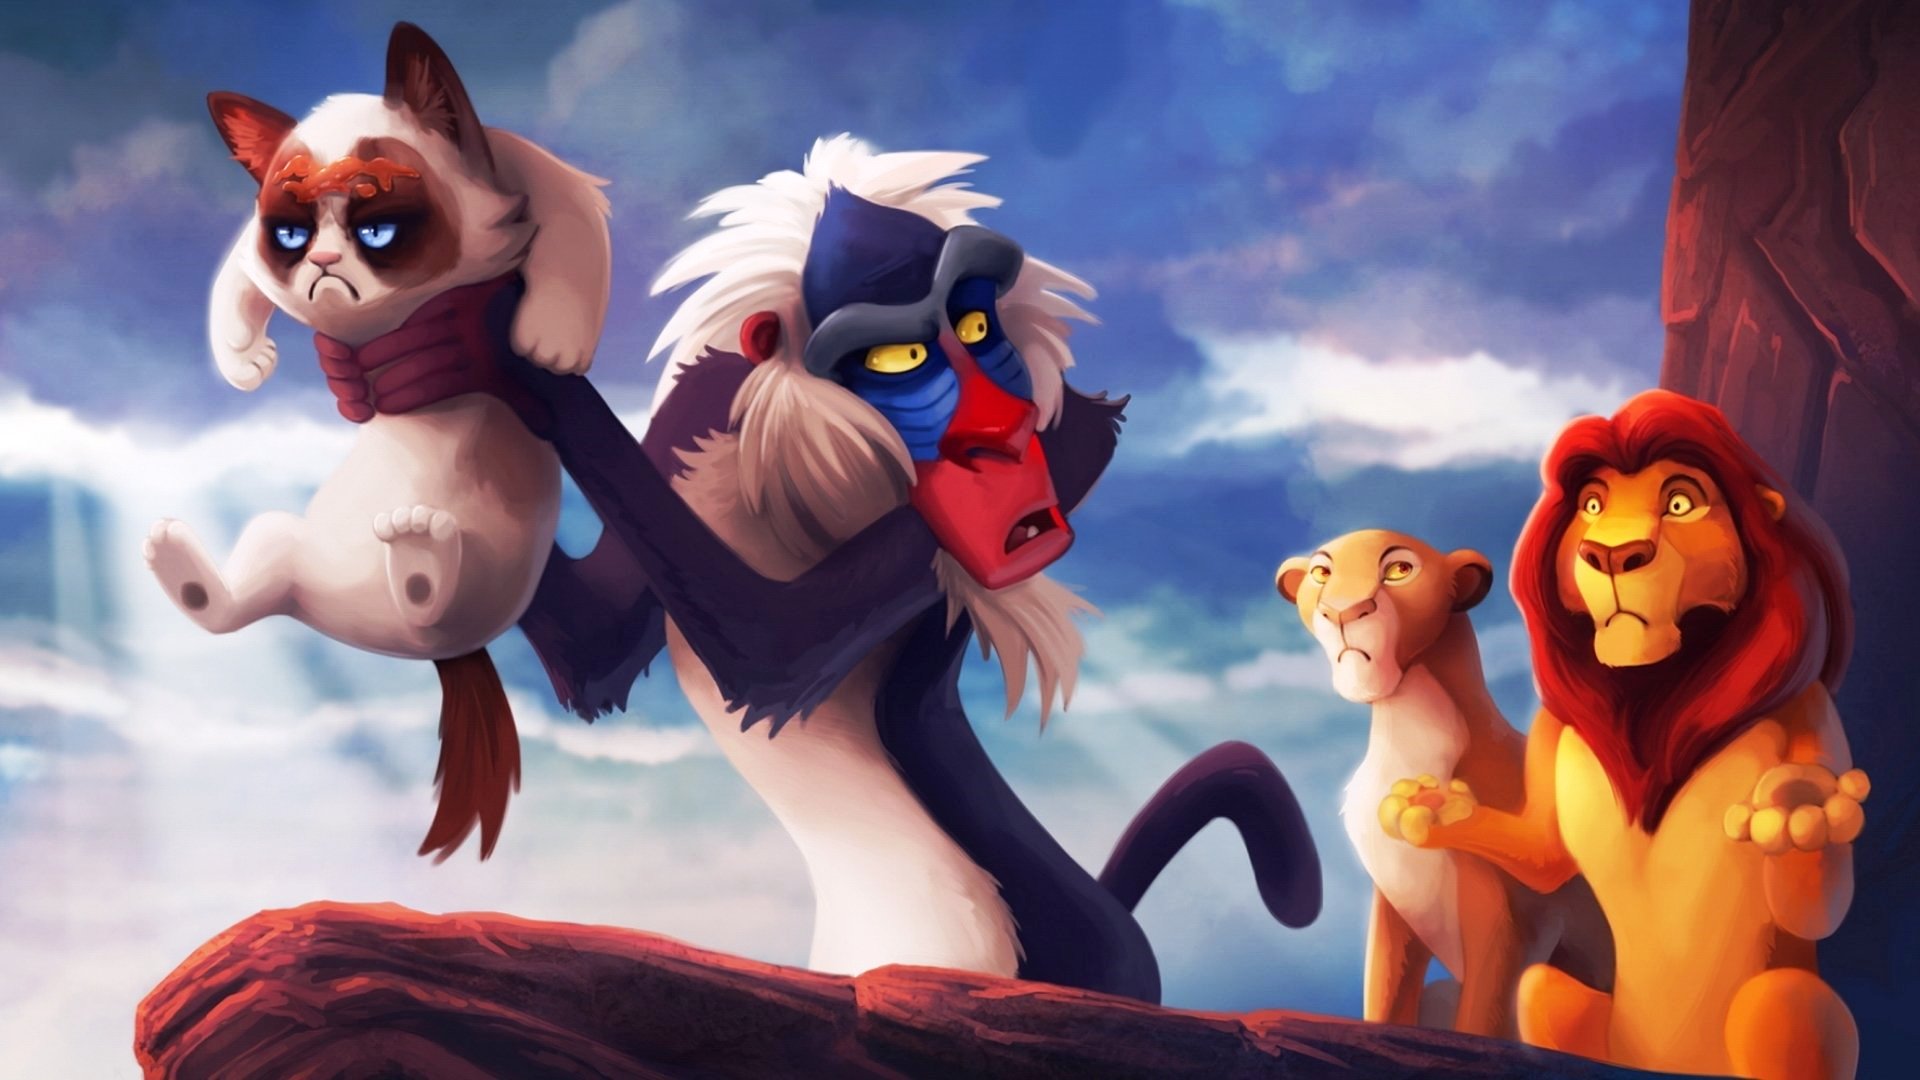 Lion King Cartoons Disney Wallpaper Tumblr - Simba Lion King Background - HD Wallpaper 